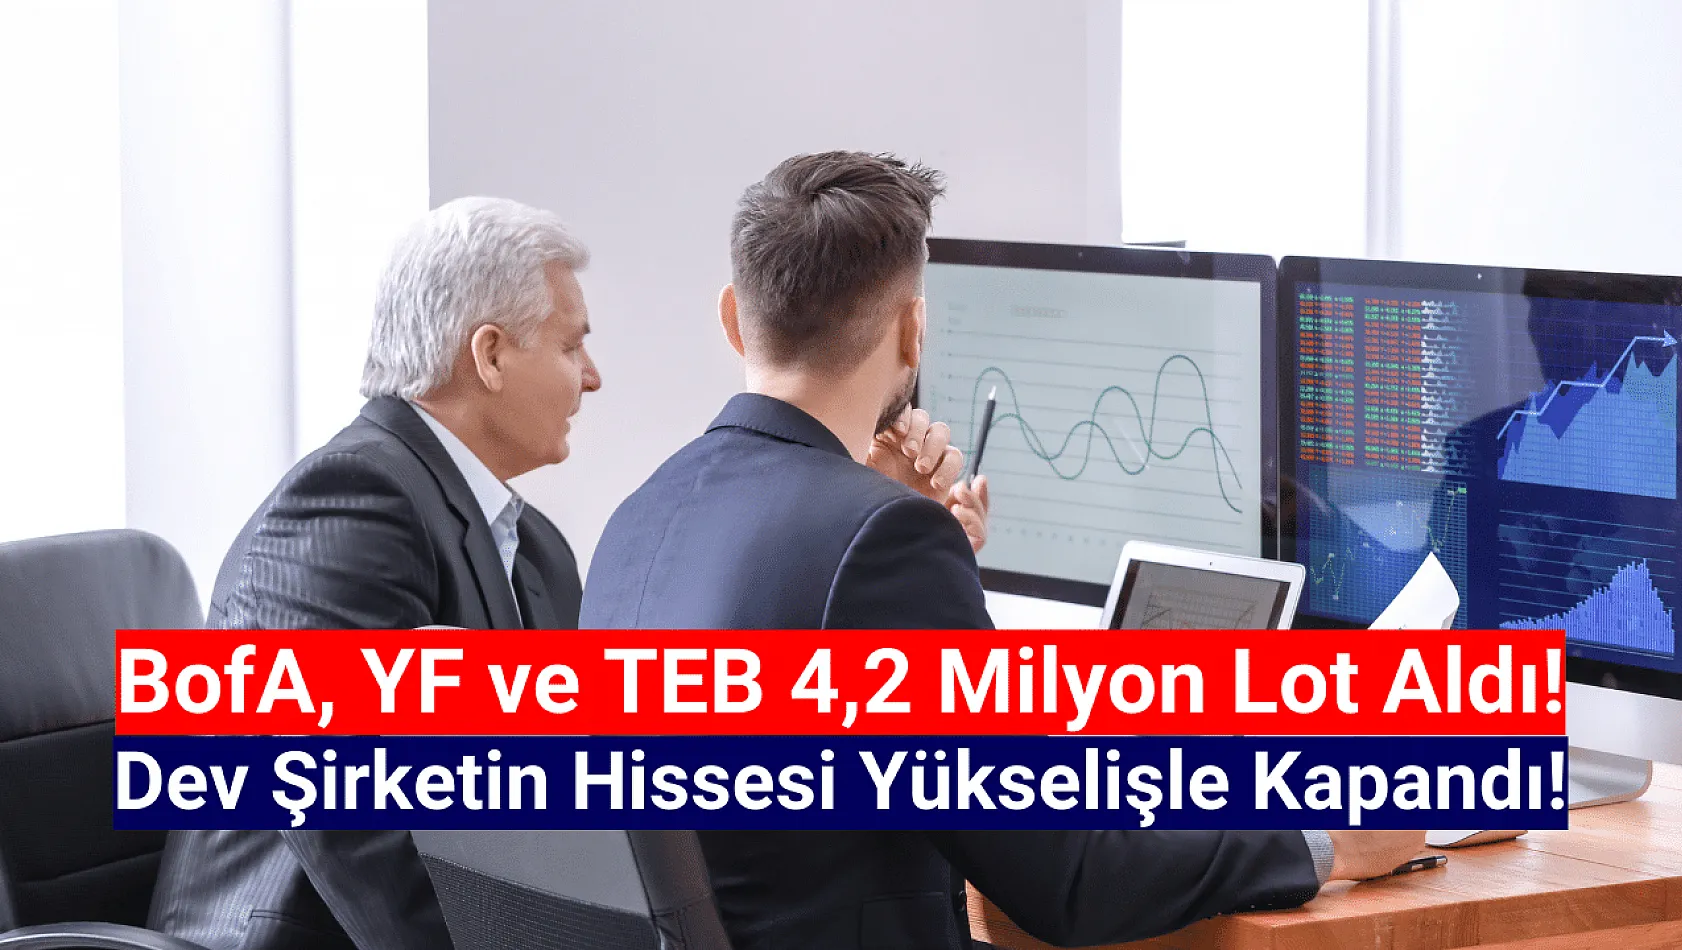 BofA, YF ve TEB dev şirketin hissesinde 4,2 milyon lot alım yaptı!